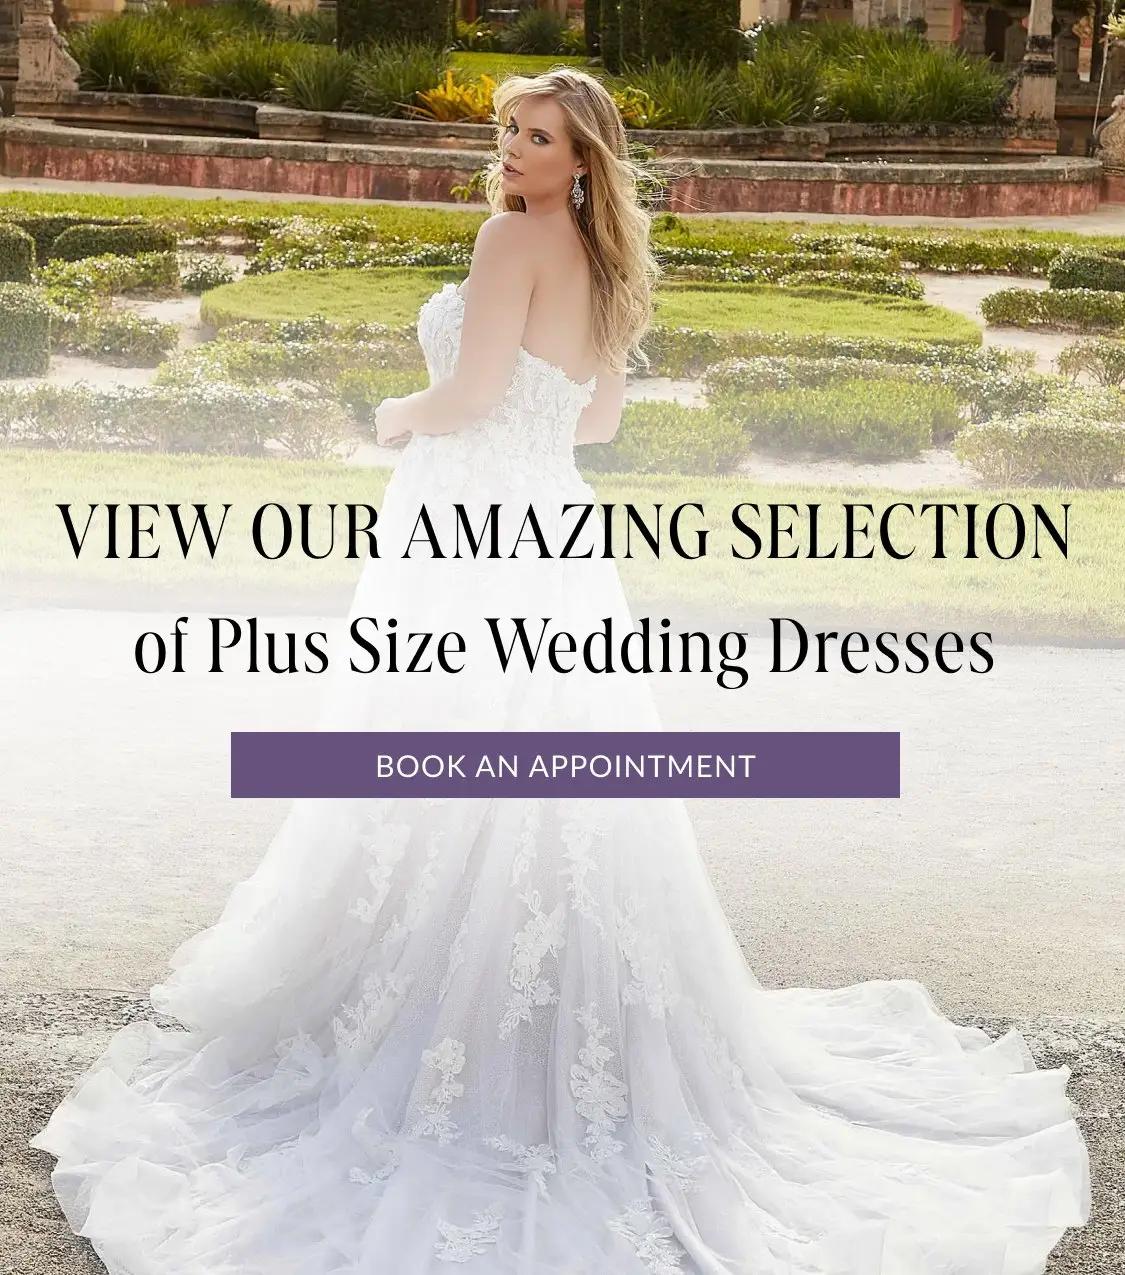 Plus size wedding dresses at Bridal Novias Boutique